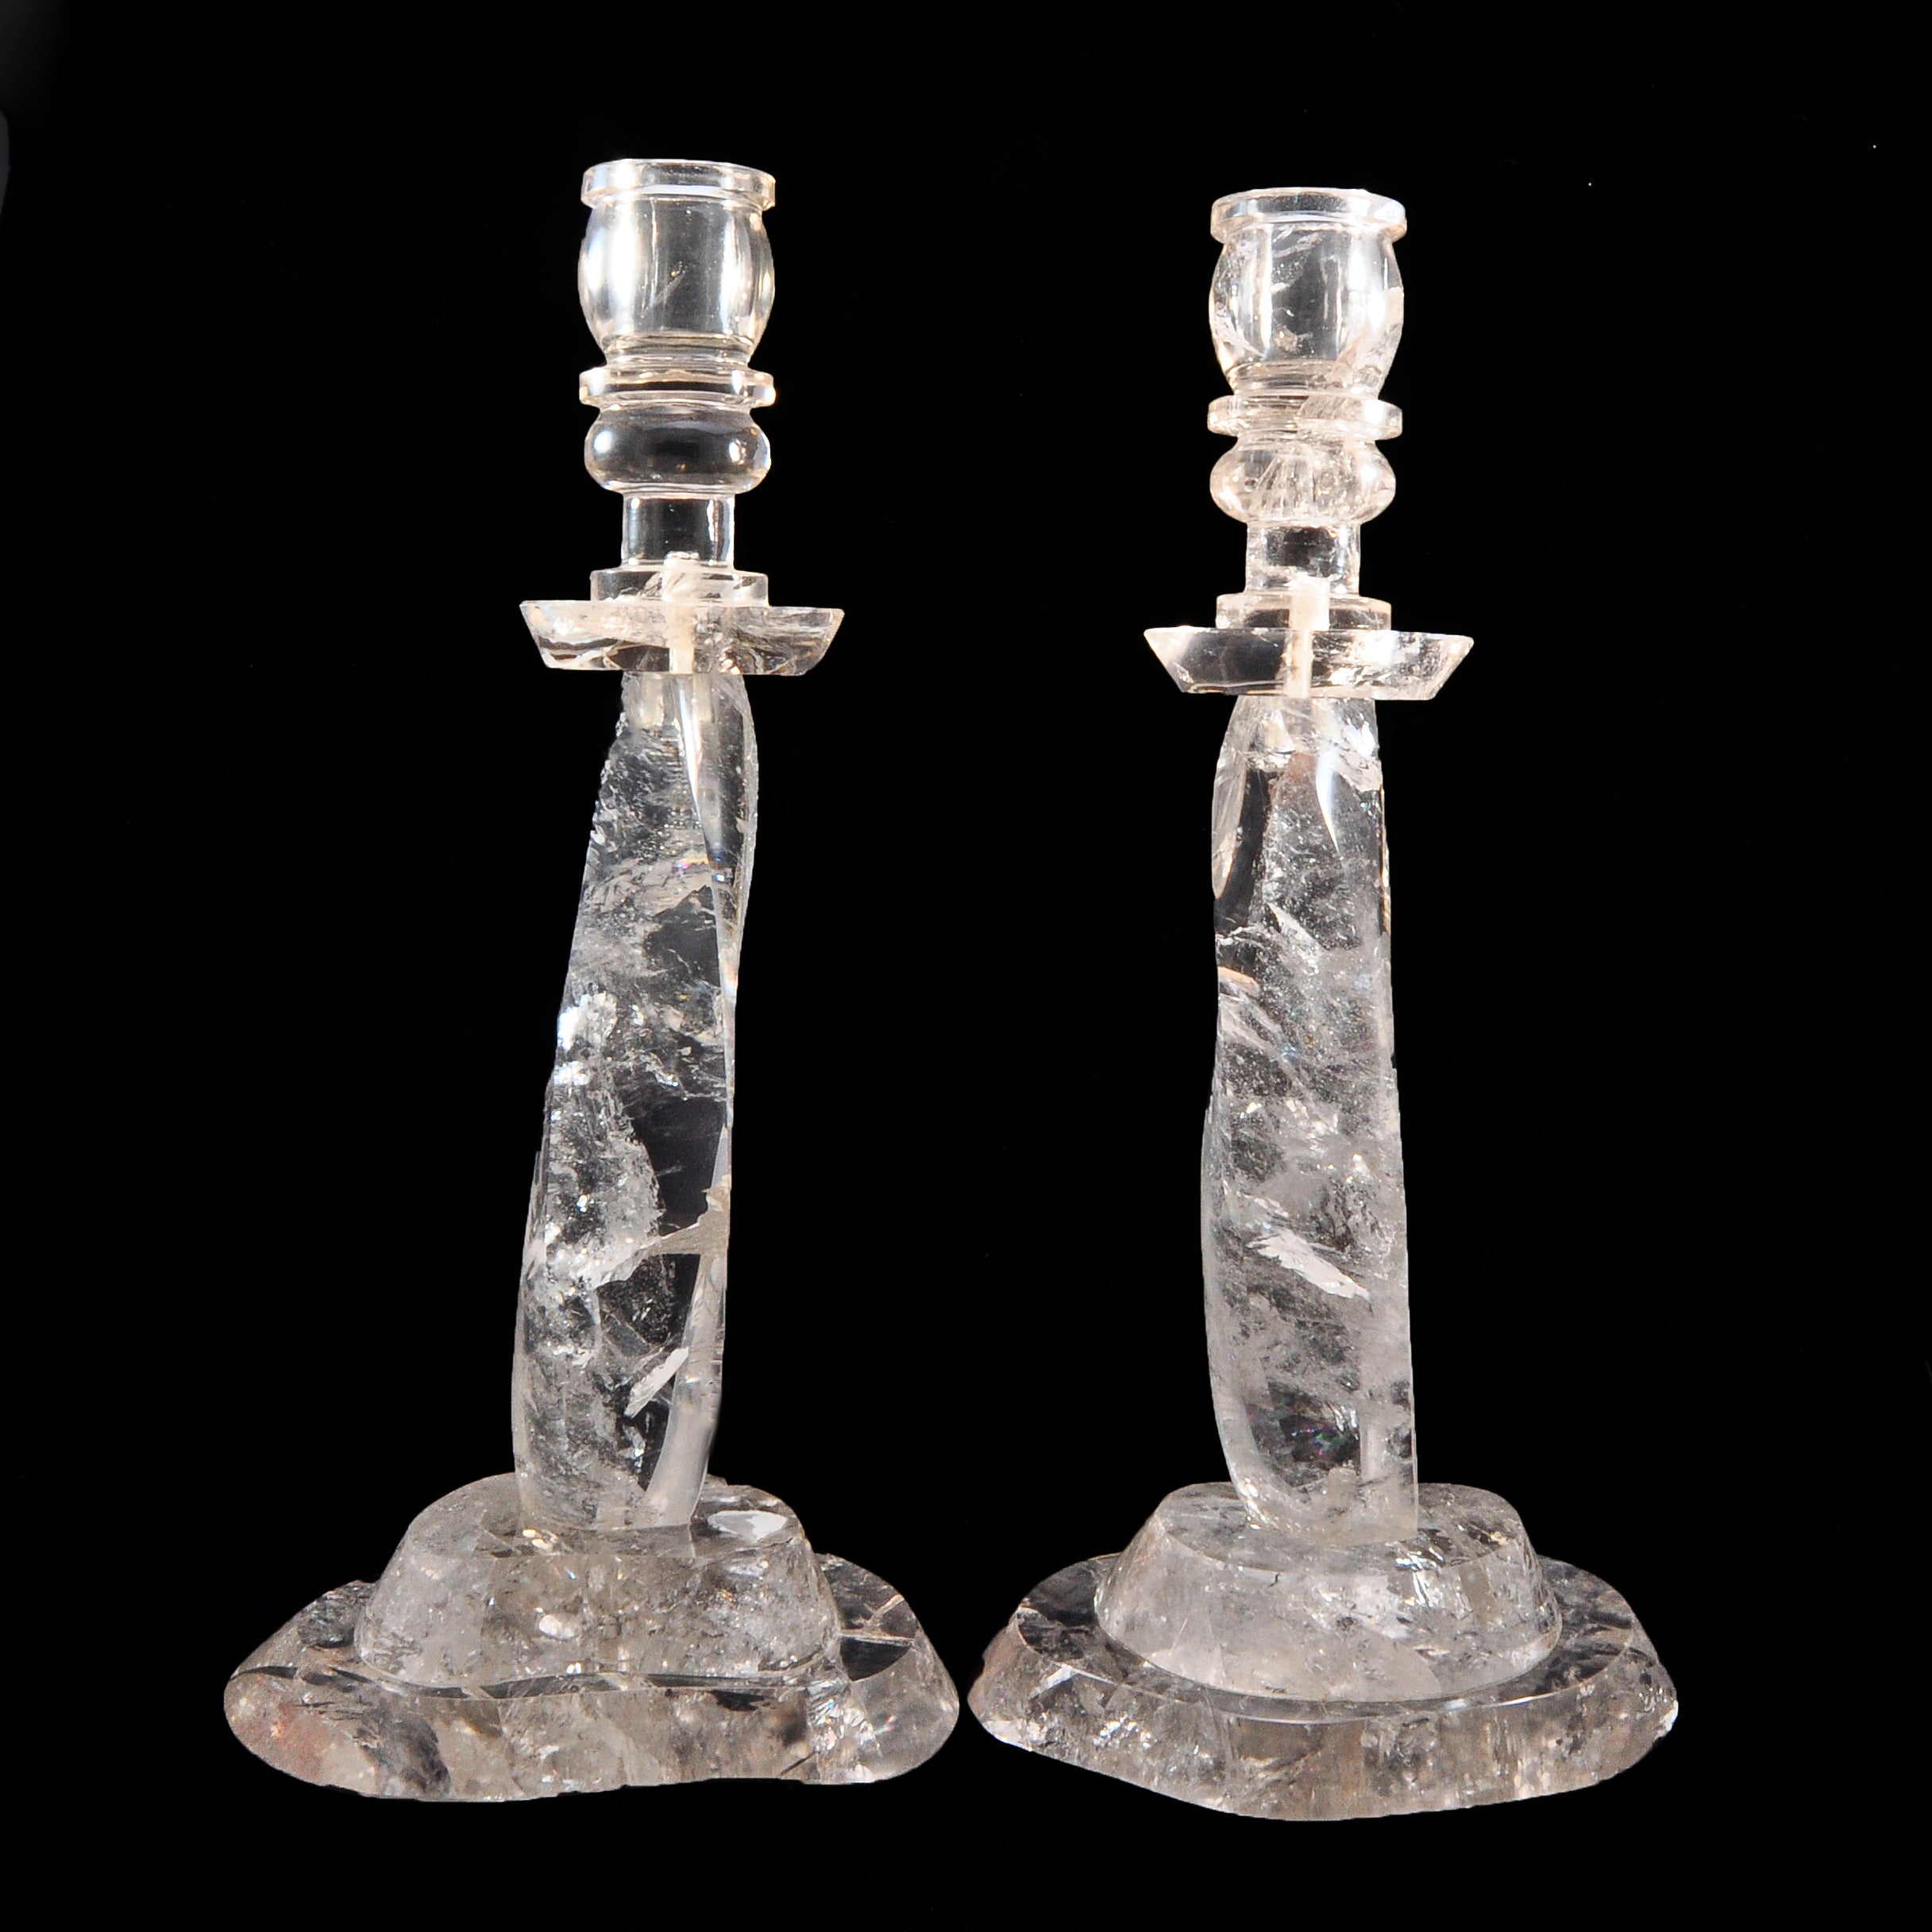 Quartz 11 inch Clear Crystal Candlesticks - FFR-020 - Crystalarium